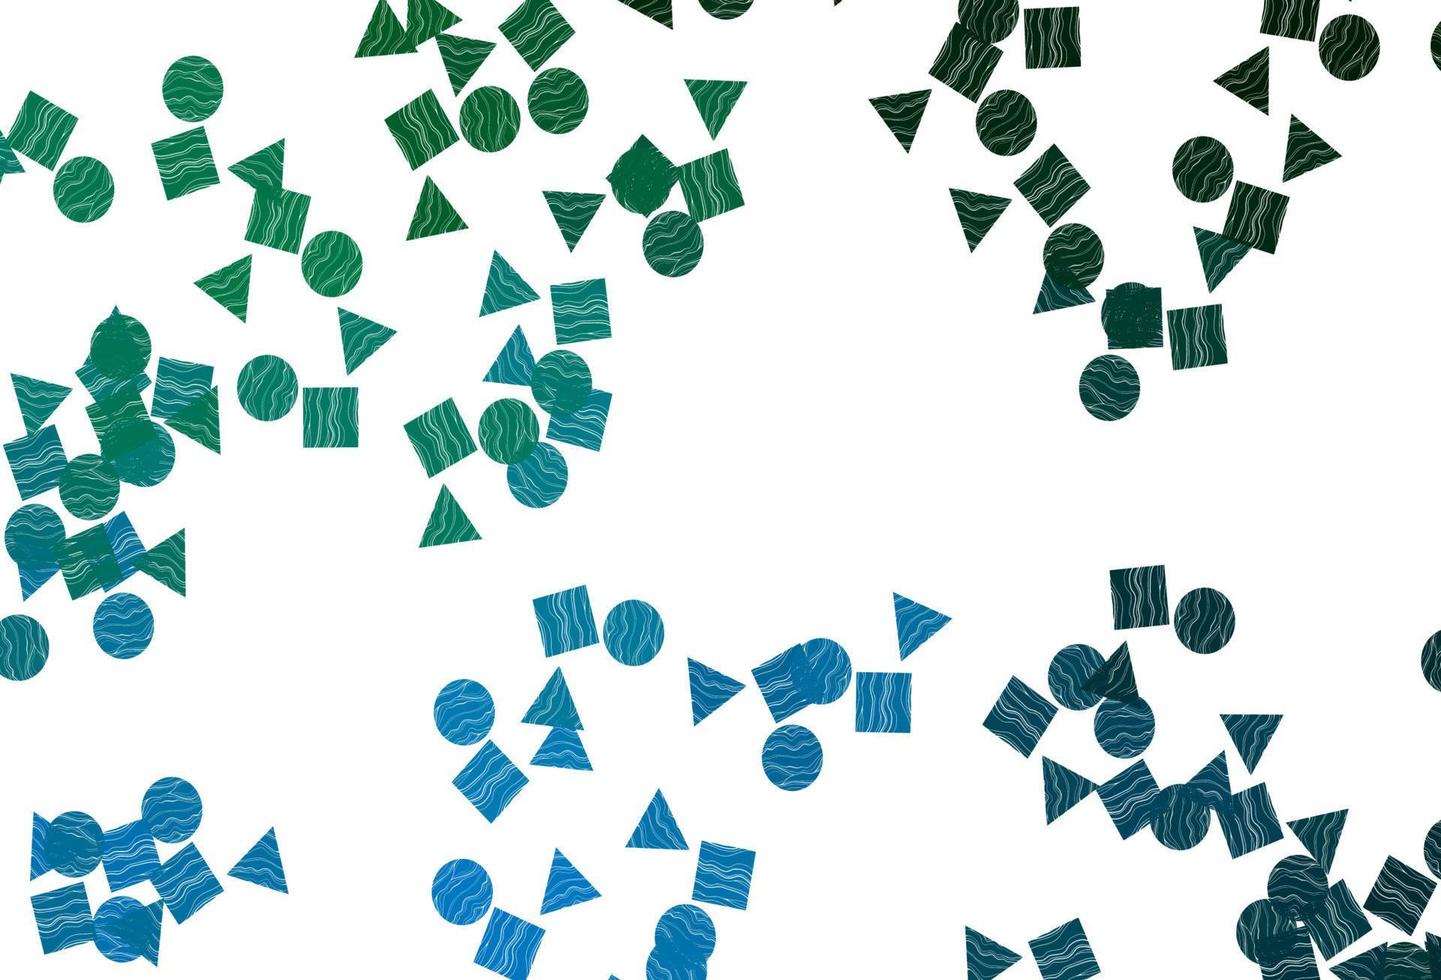 Telón de fondo de vector azul claro, verde con líneas, círculos, rombos.